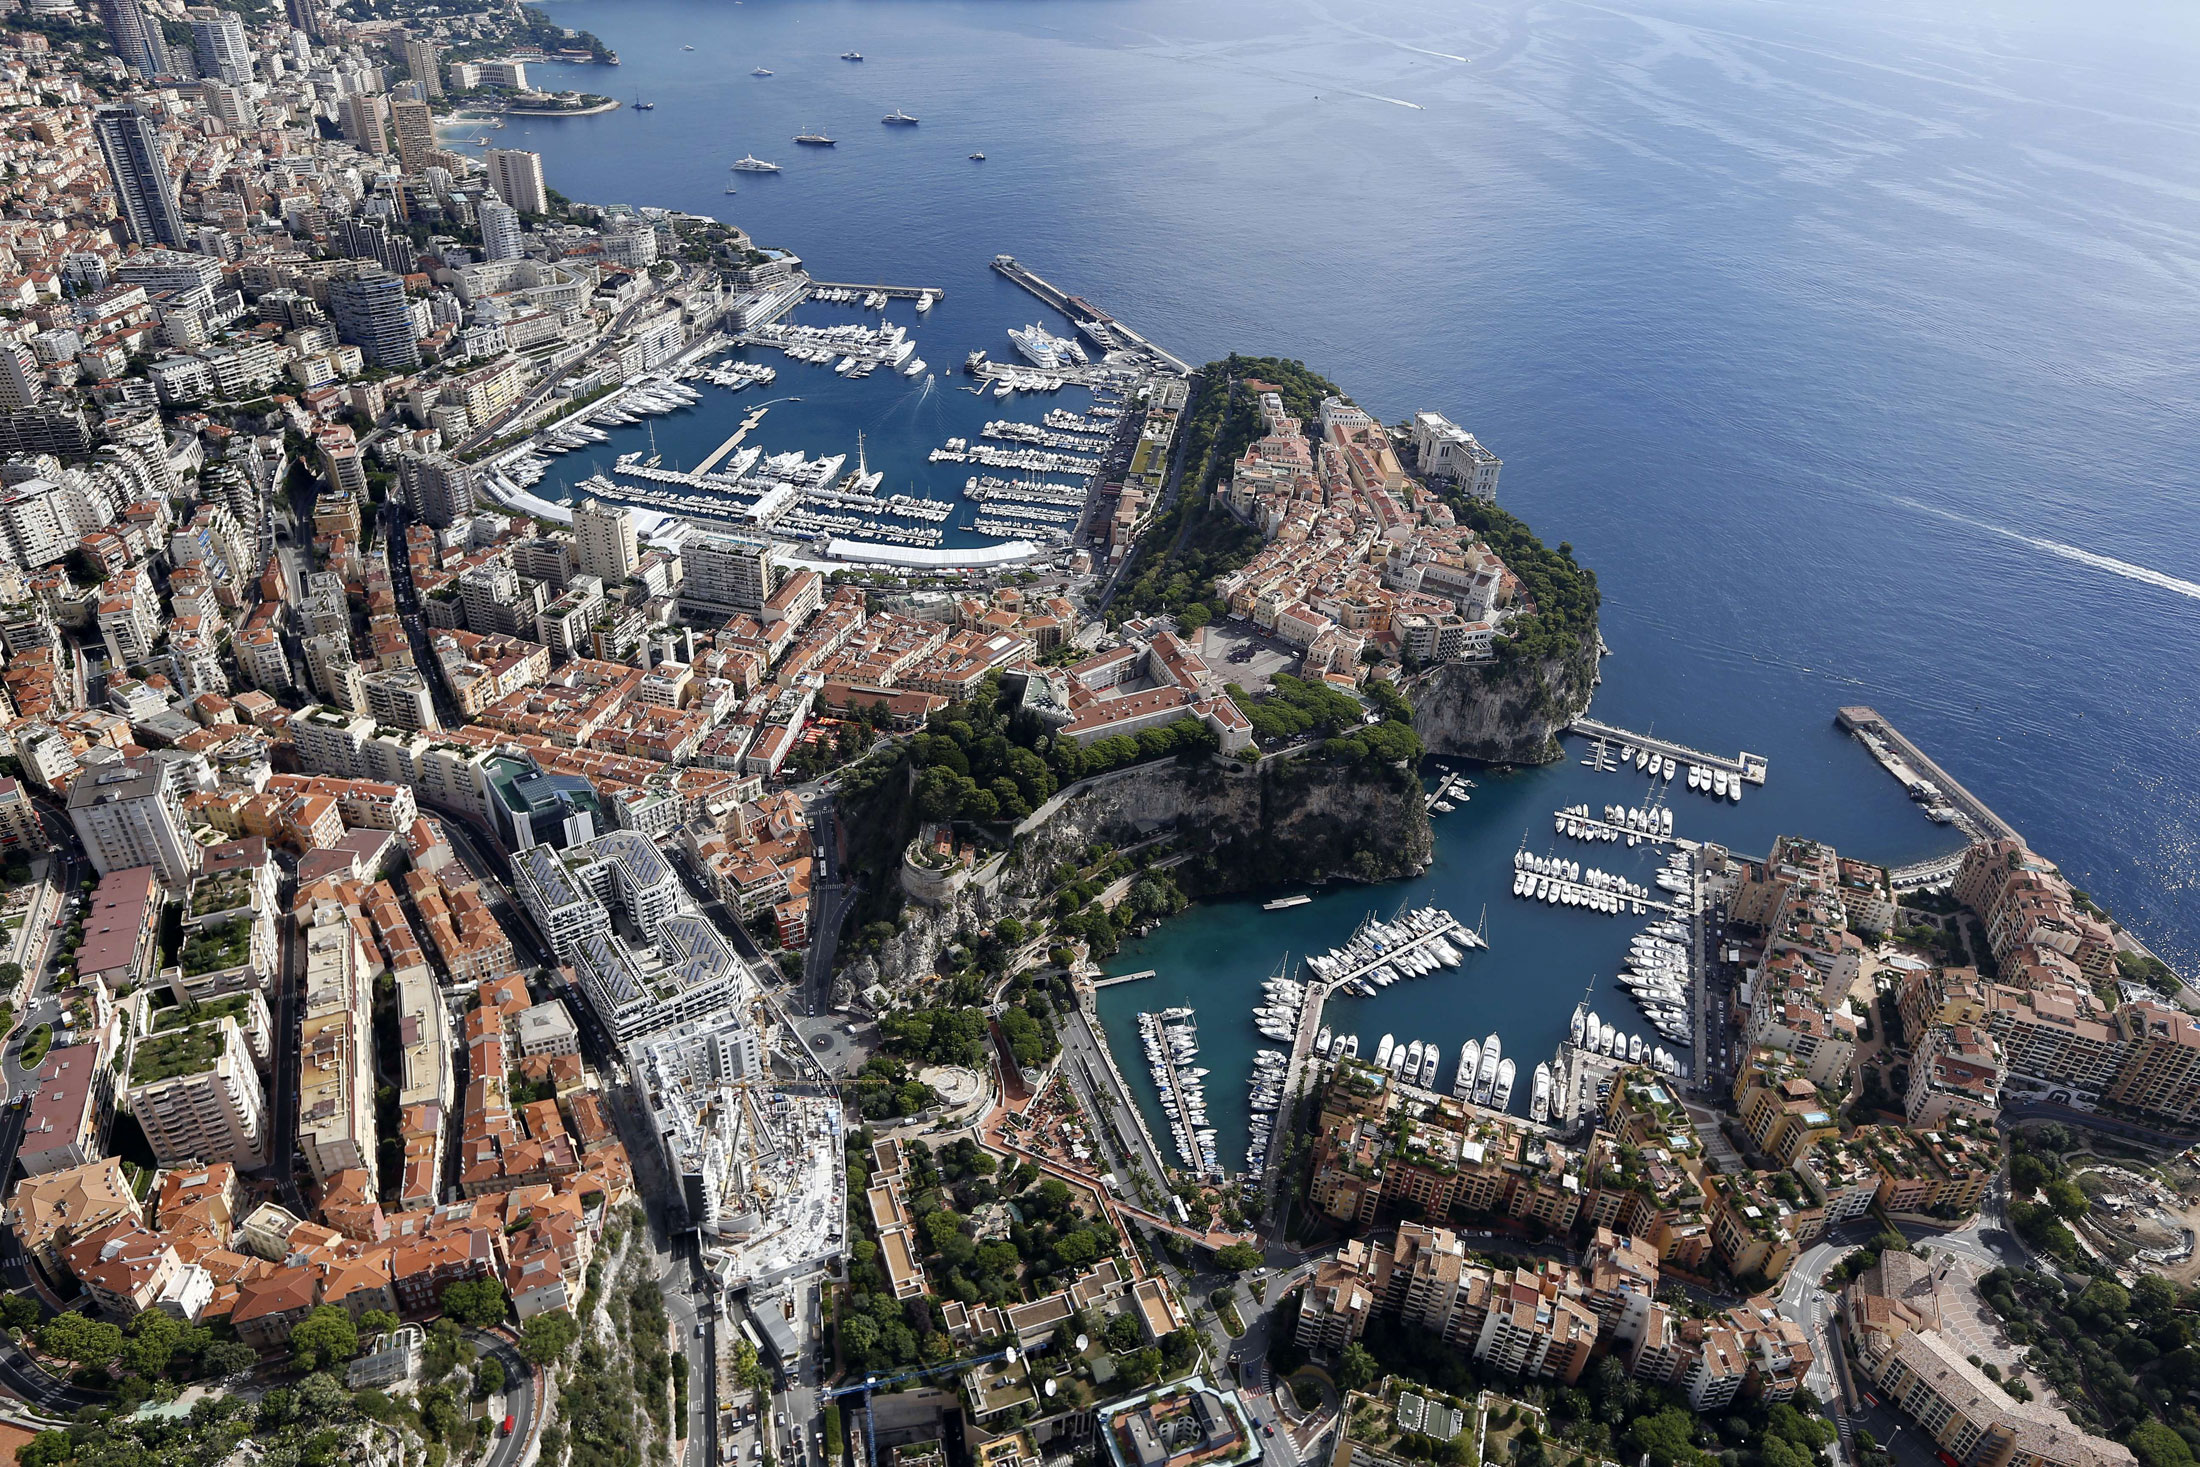 Monaco.
